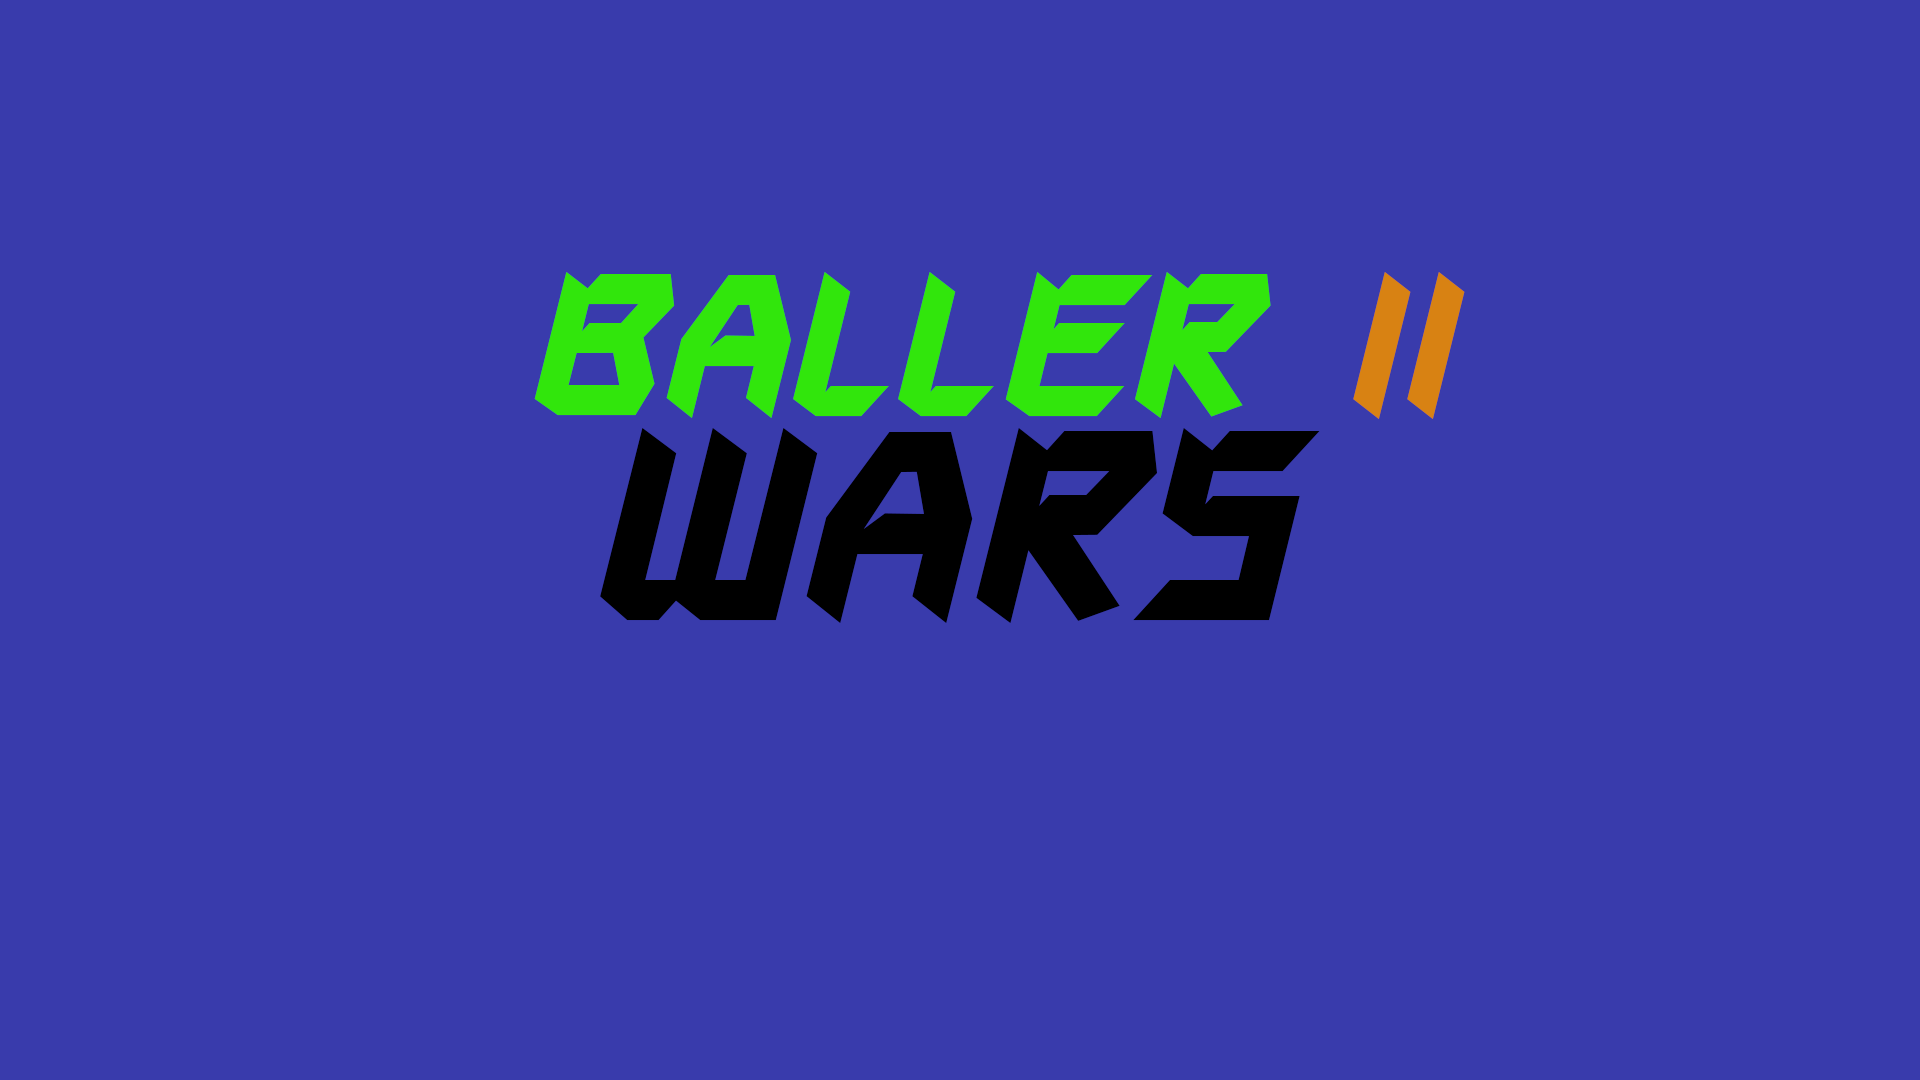 BALLER II: Wars